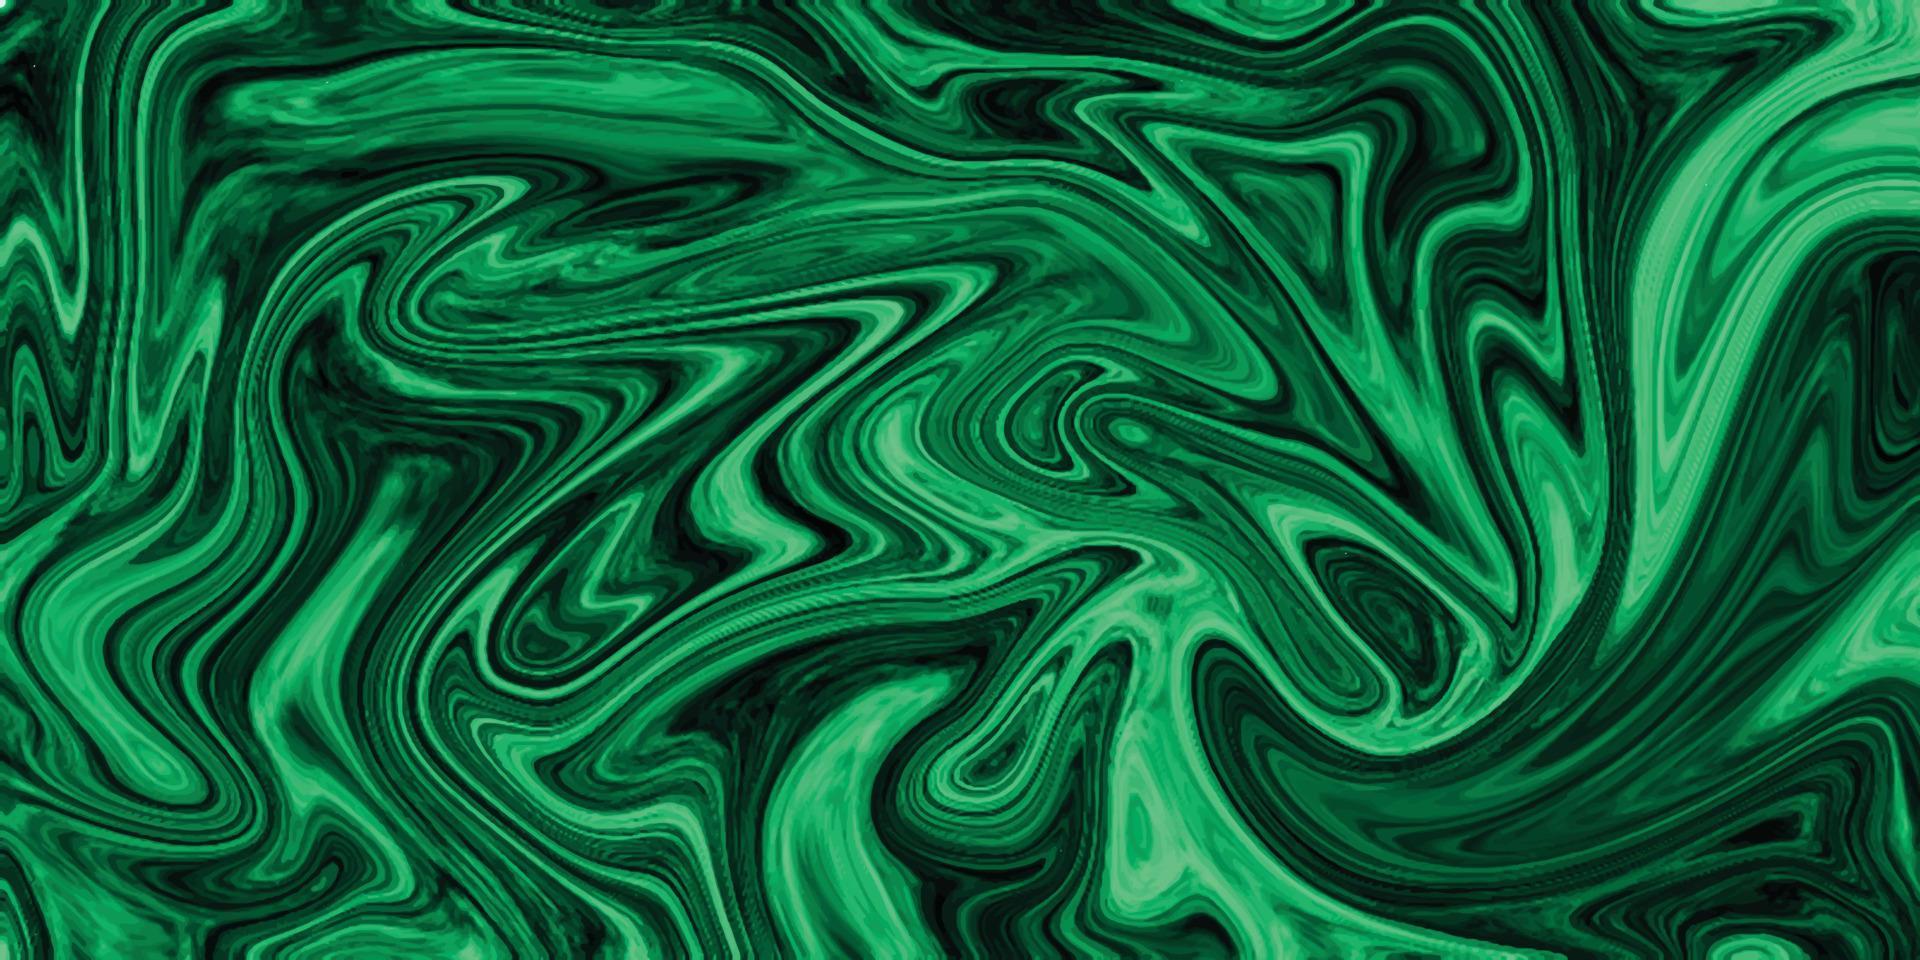 Design von grünen flüssigen Marmoroberflächen und Panorama-Texturhintergrund. luxuriöser bunter flüssiger Marmoroberflächenhintergrund, dunkelgrüne Farbe schöner flüssiger abstrakter Marmorölfarbenhintergrund, Vektor